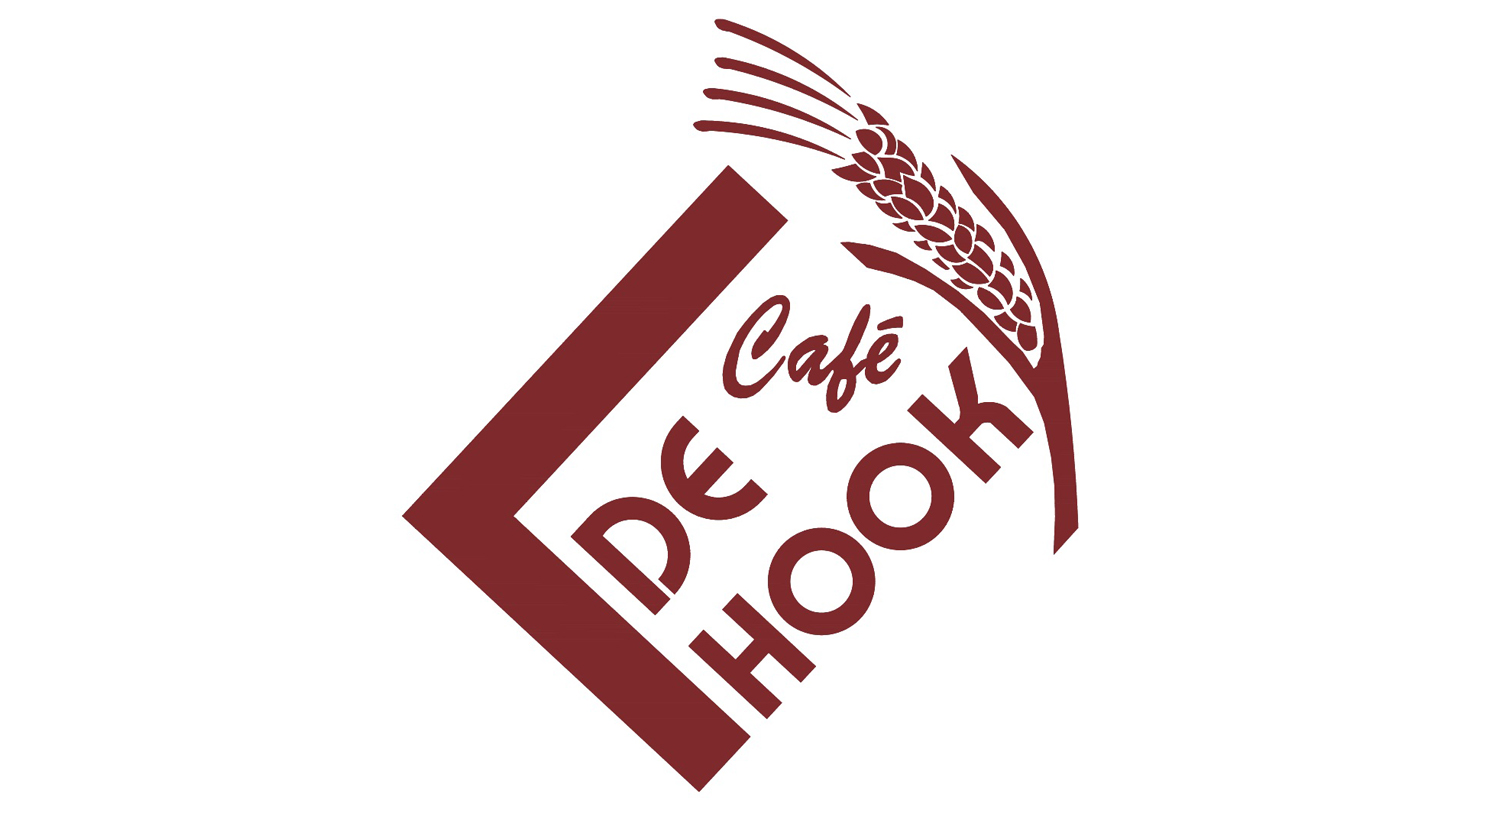 Café de Hook